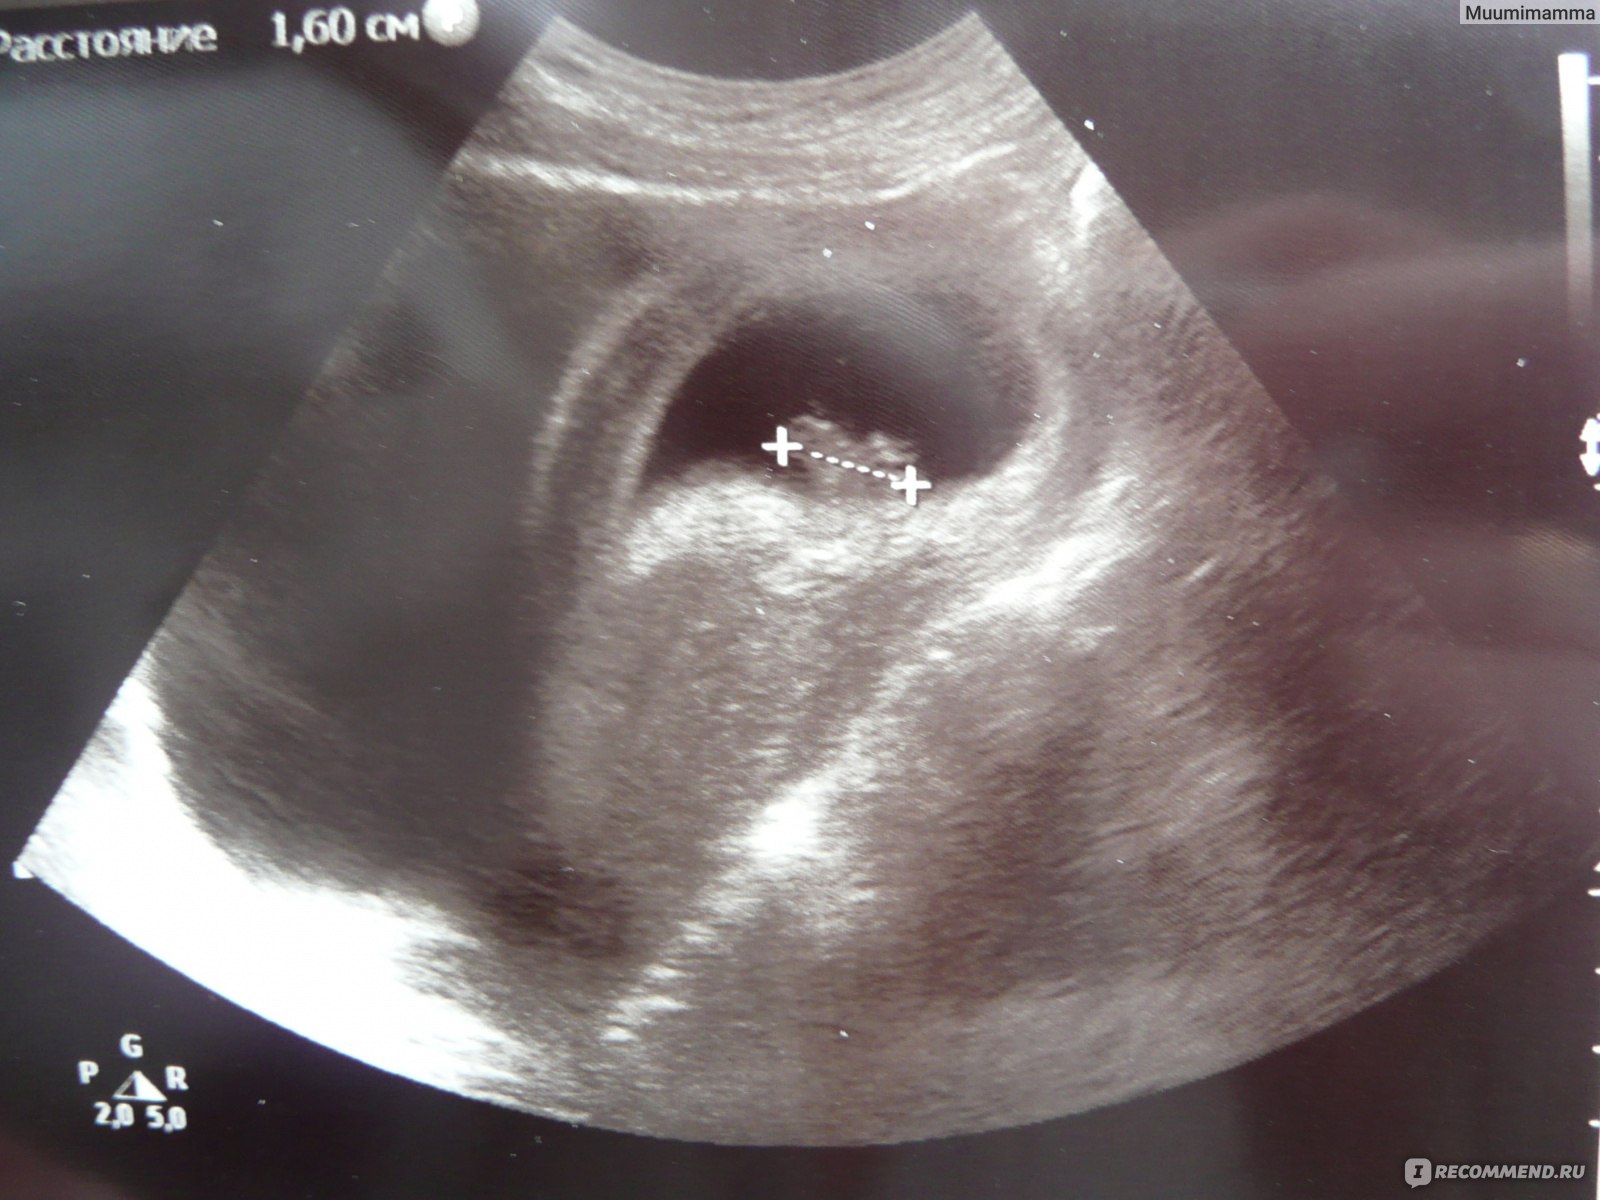 Через 6 8 недель. Эмбрион на 8 неделе беременности УЗИ. УЗИ 8.5 недель беременности. 8 Недель беременности фото плода на УЗИ. Снимок ребёнка на УЗИ 8 недель беременности.